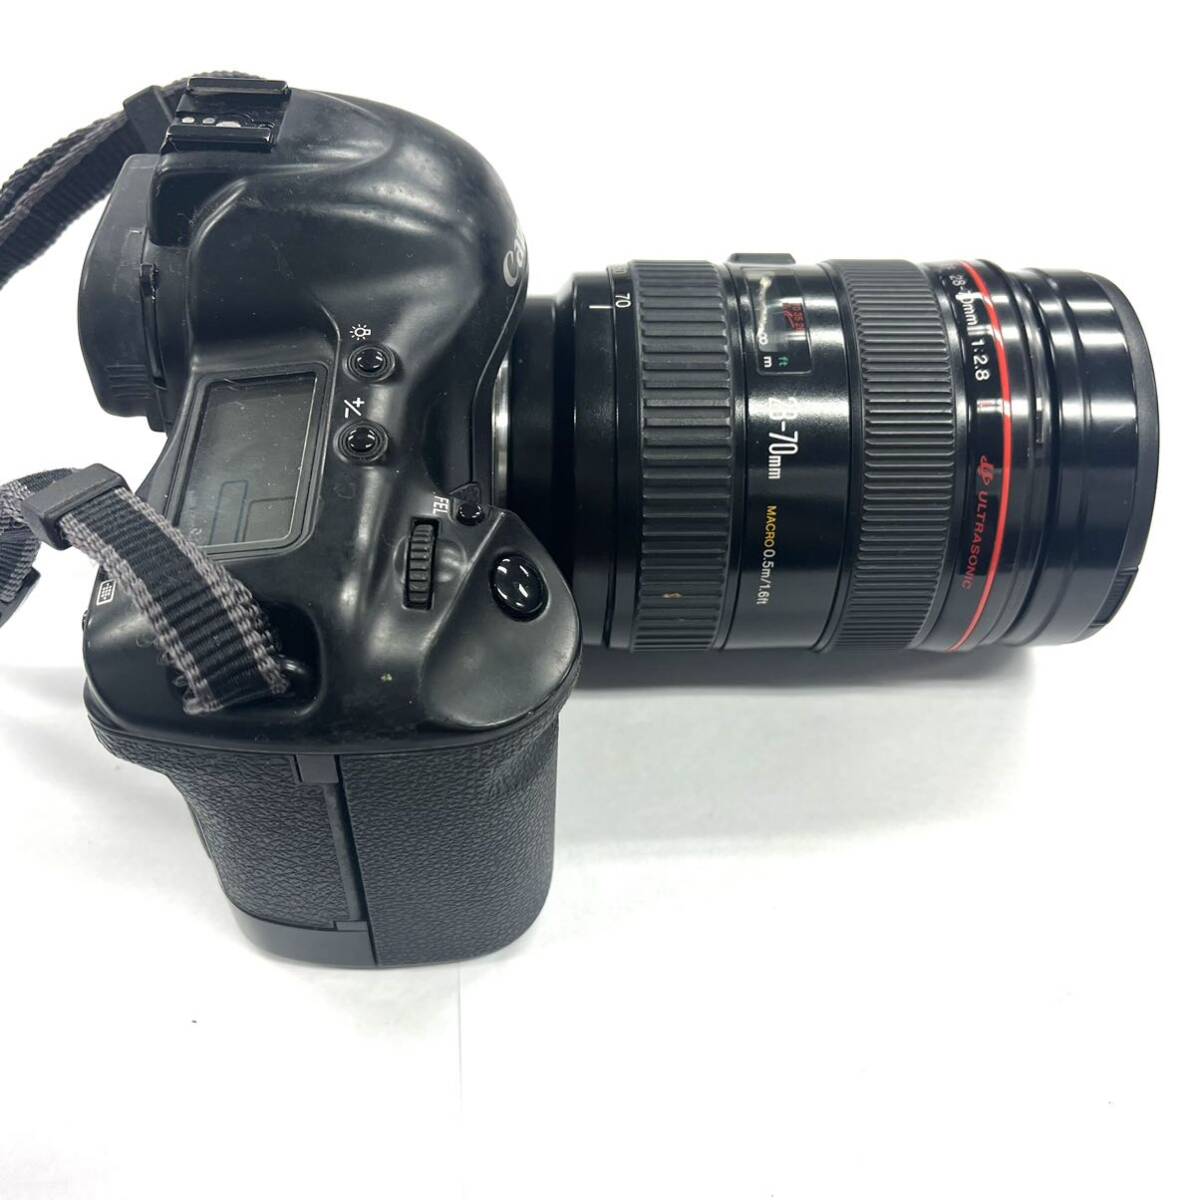 N290 フィルムカメラ Canon キャノン EOS-1 CANON ZOOM LENS EF 28-70mm 1:2.8 ULTRA SONIC ジャンク品 中古 訳あり_画像2